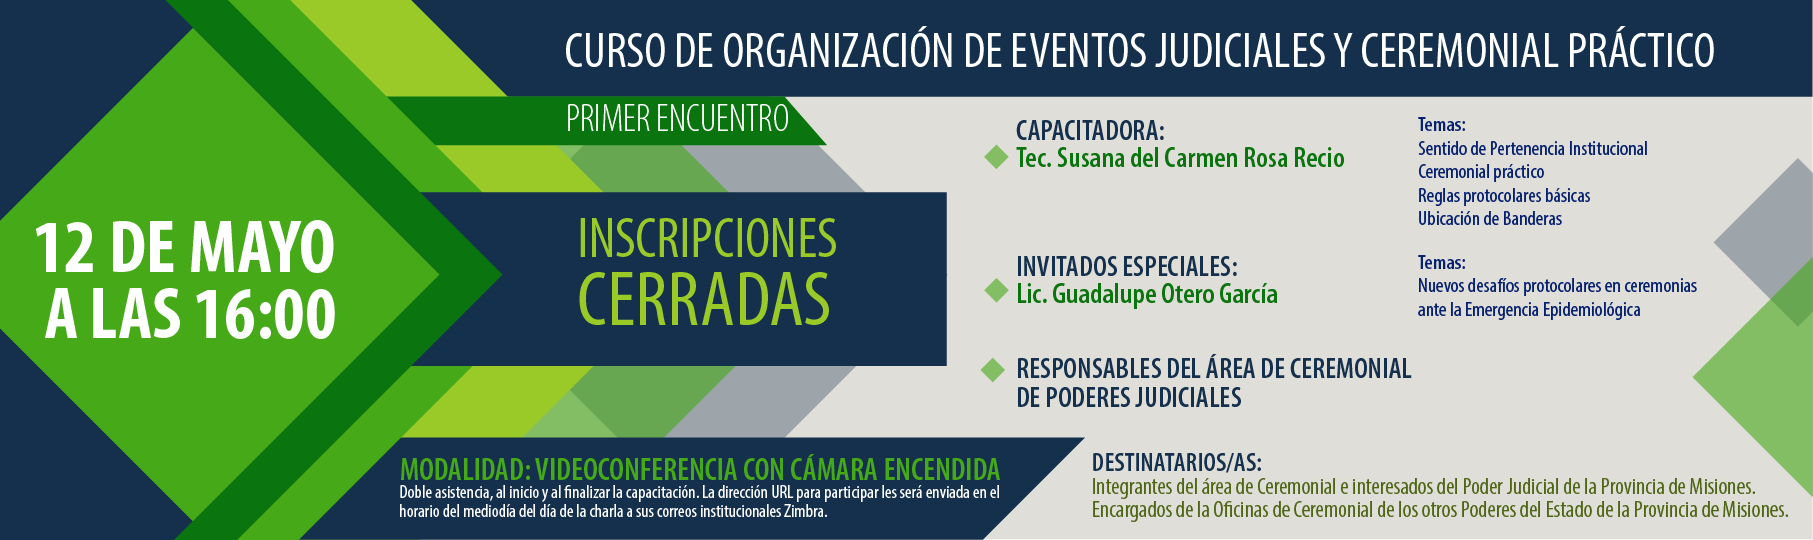 InC_Curso_de_Organizacin_de_Eventos_Judiciales_y_Ceremonial_Prctico-01